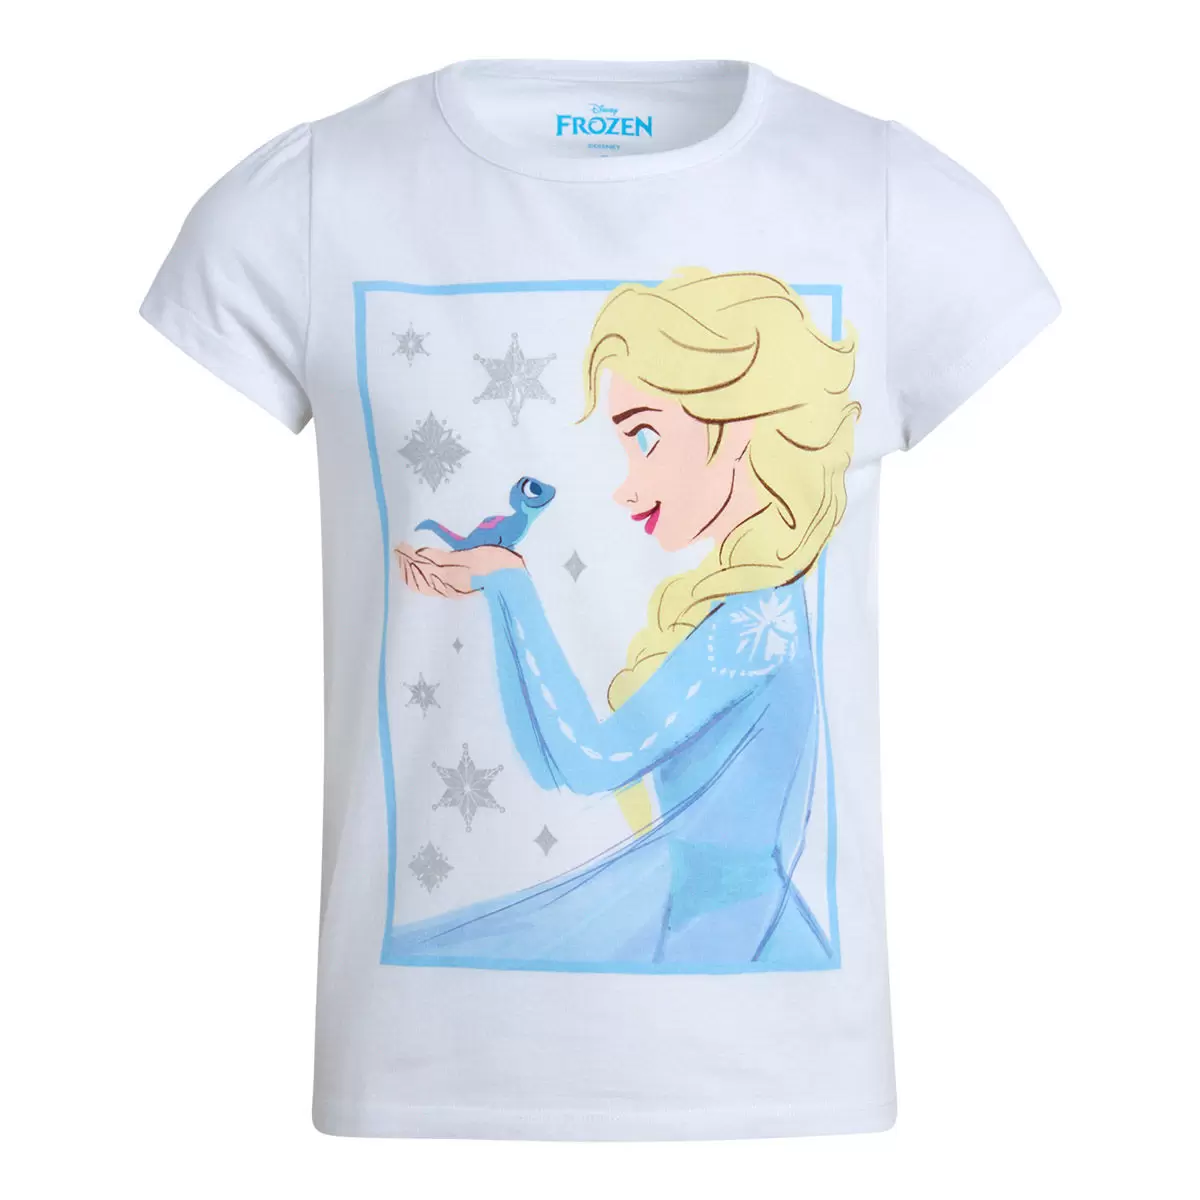 兒童卡通圖案短袖上衣四件組 Frozen